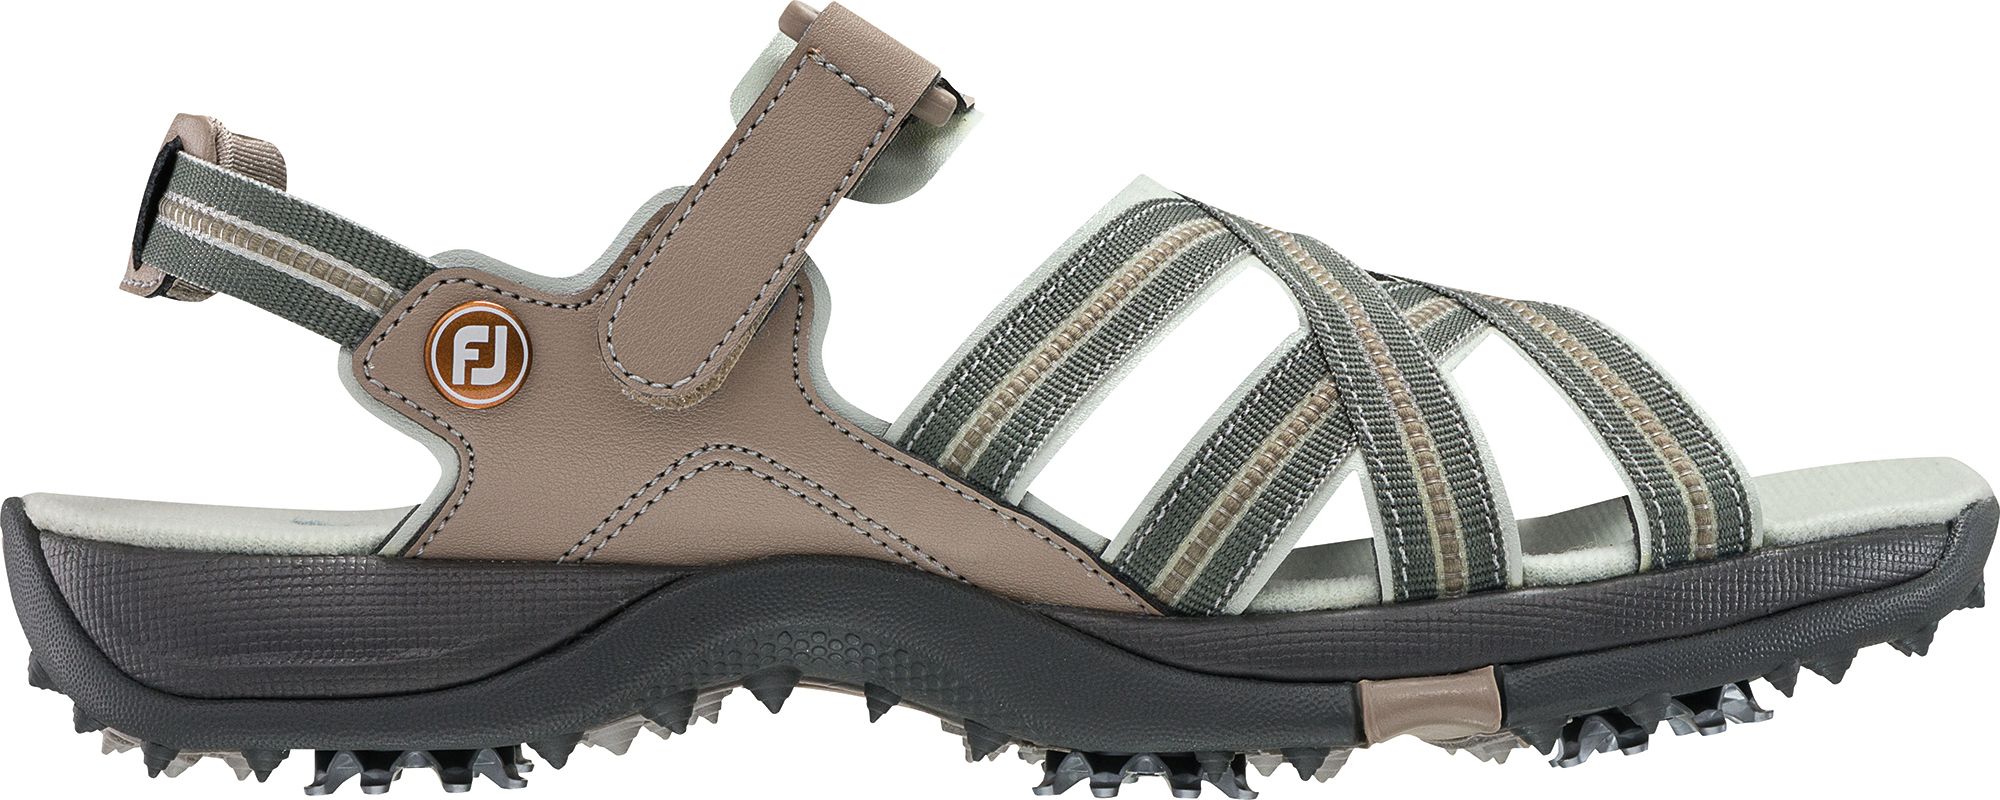 golf sandals